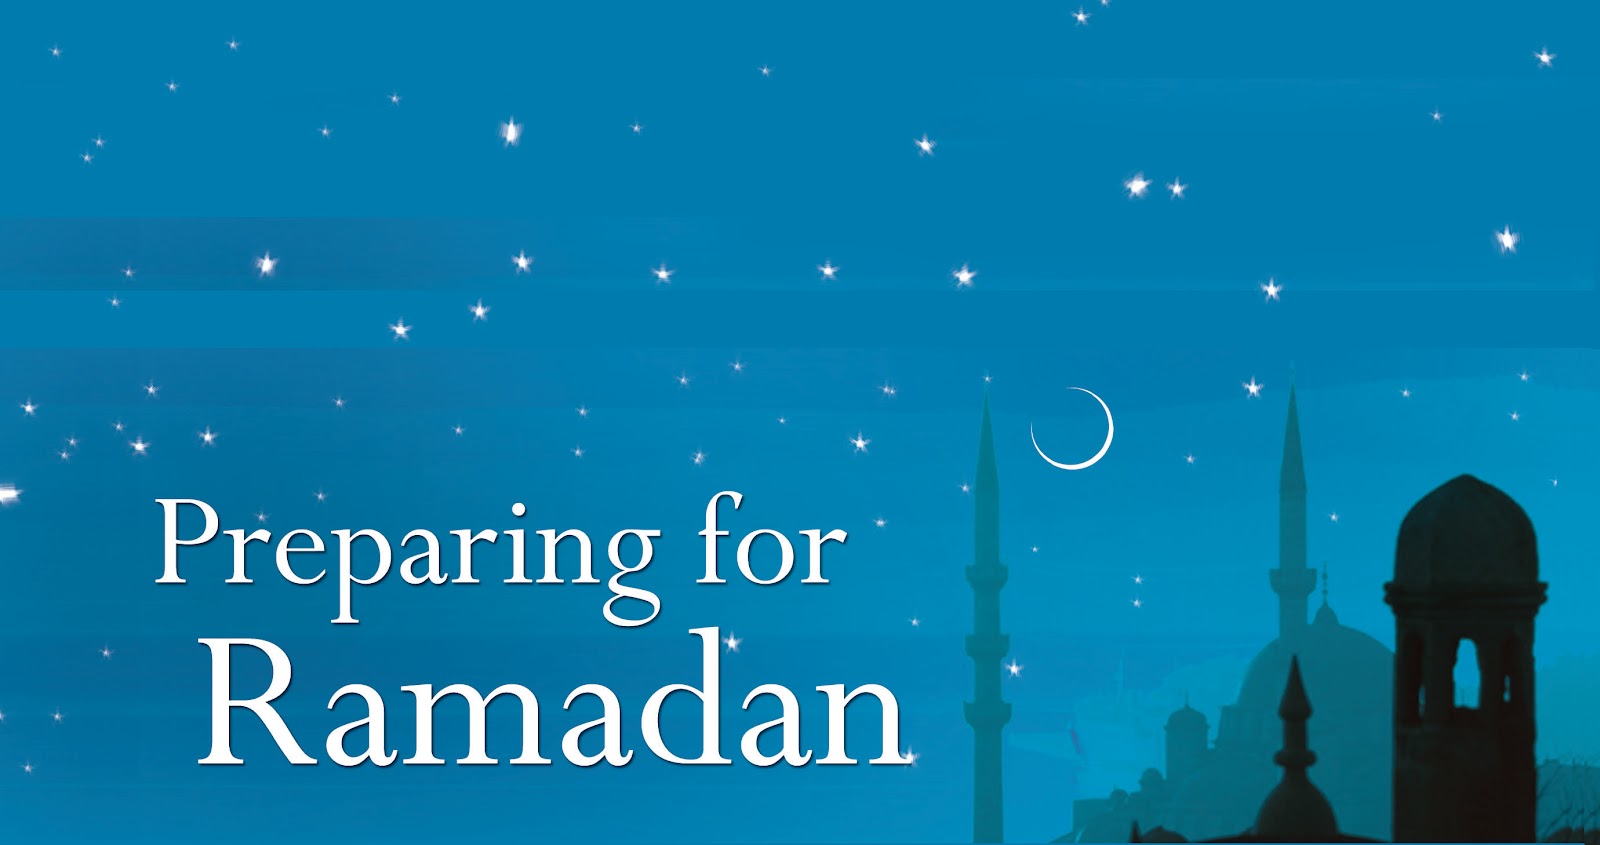 366 3 اناشيد رمضان محبتكم عزيزه